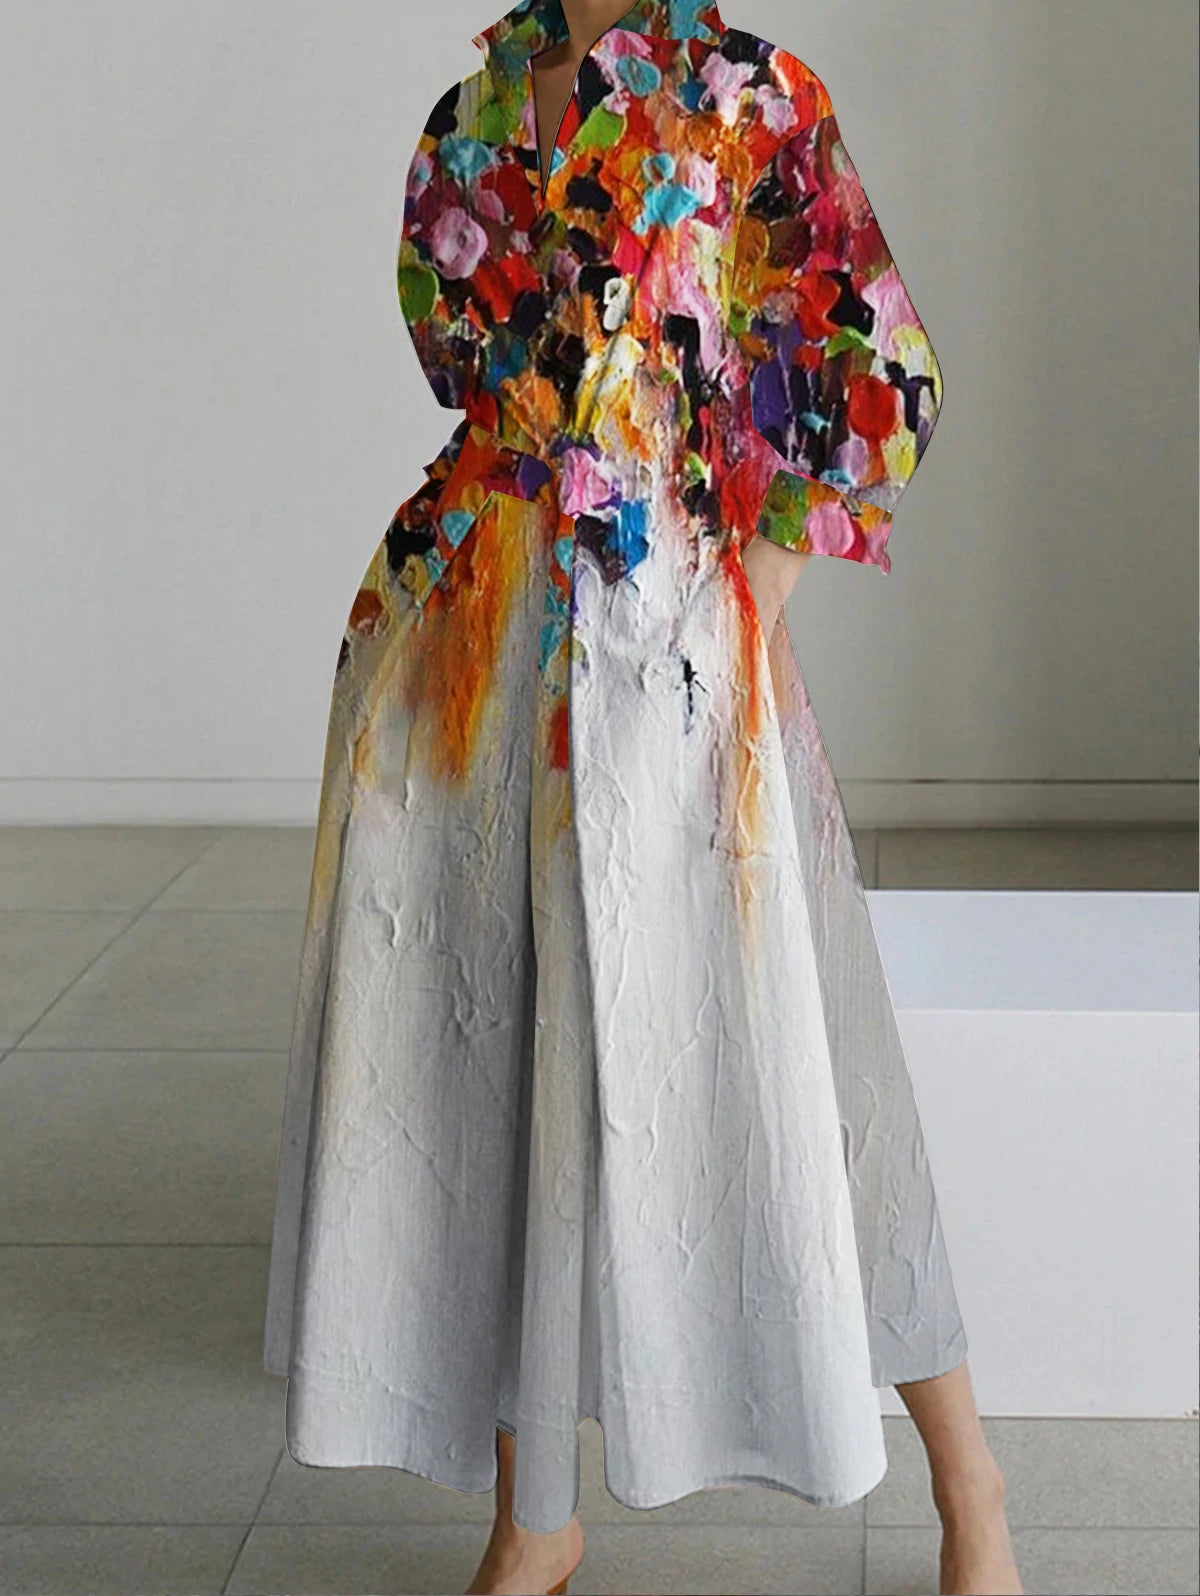 Vintage Cotton Linen Dresses Women Summer Elegant Lapel Oil Painting Button Midi Dress Vestidos Streetwear Party Vestido